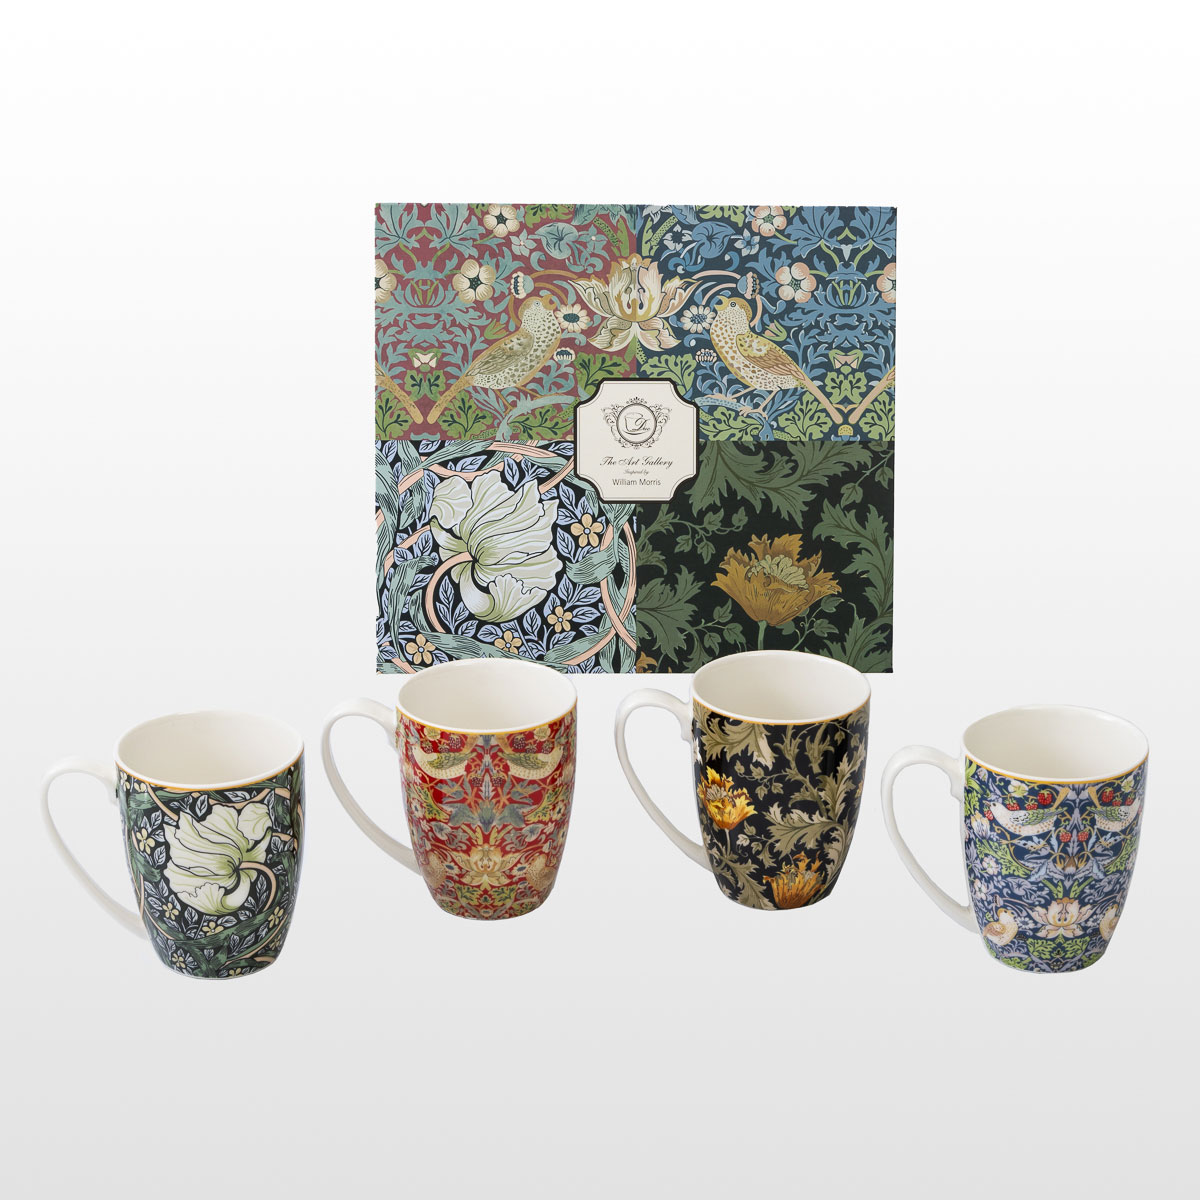 4 tazas William Morris (en una caja de regalo), detalle n°1